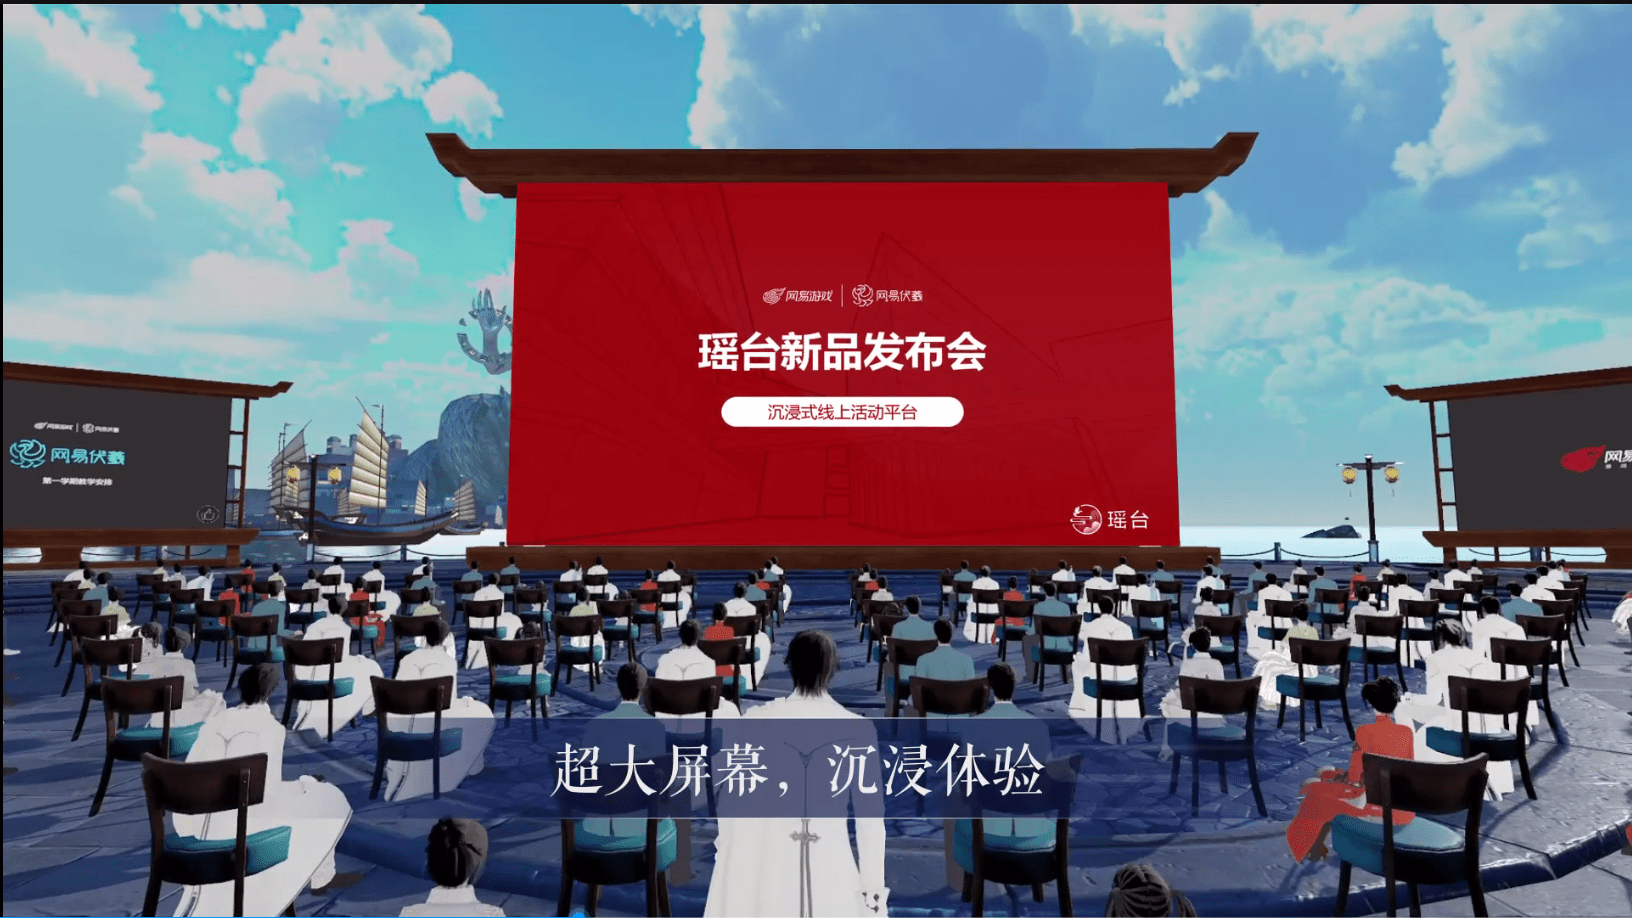 图片展示了一个虚拟现实场景，观众坐在椅子上面向一个巨大的屏幕，屏幕上有中文文字和图案。周围环境似乎是古风建筑。